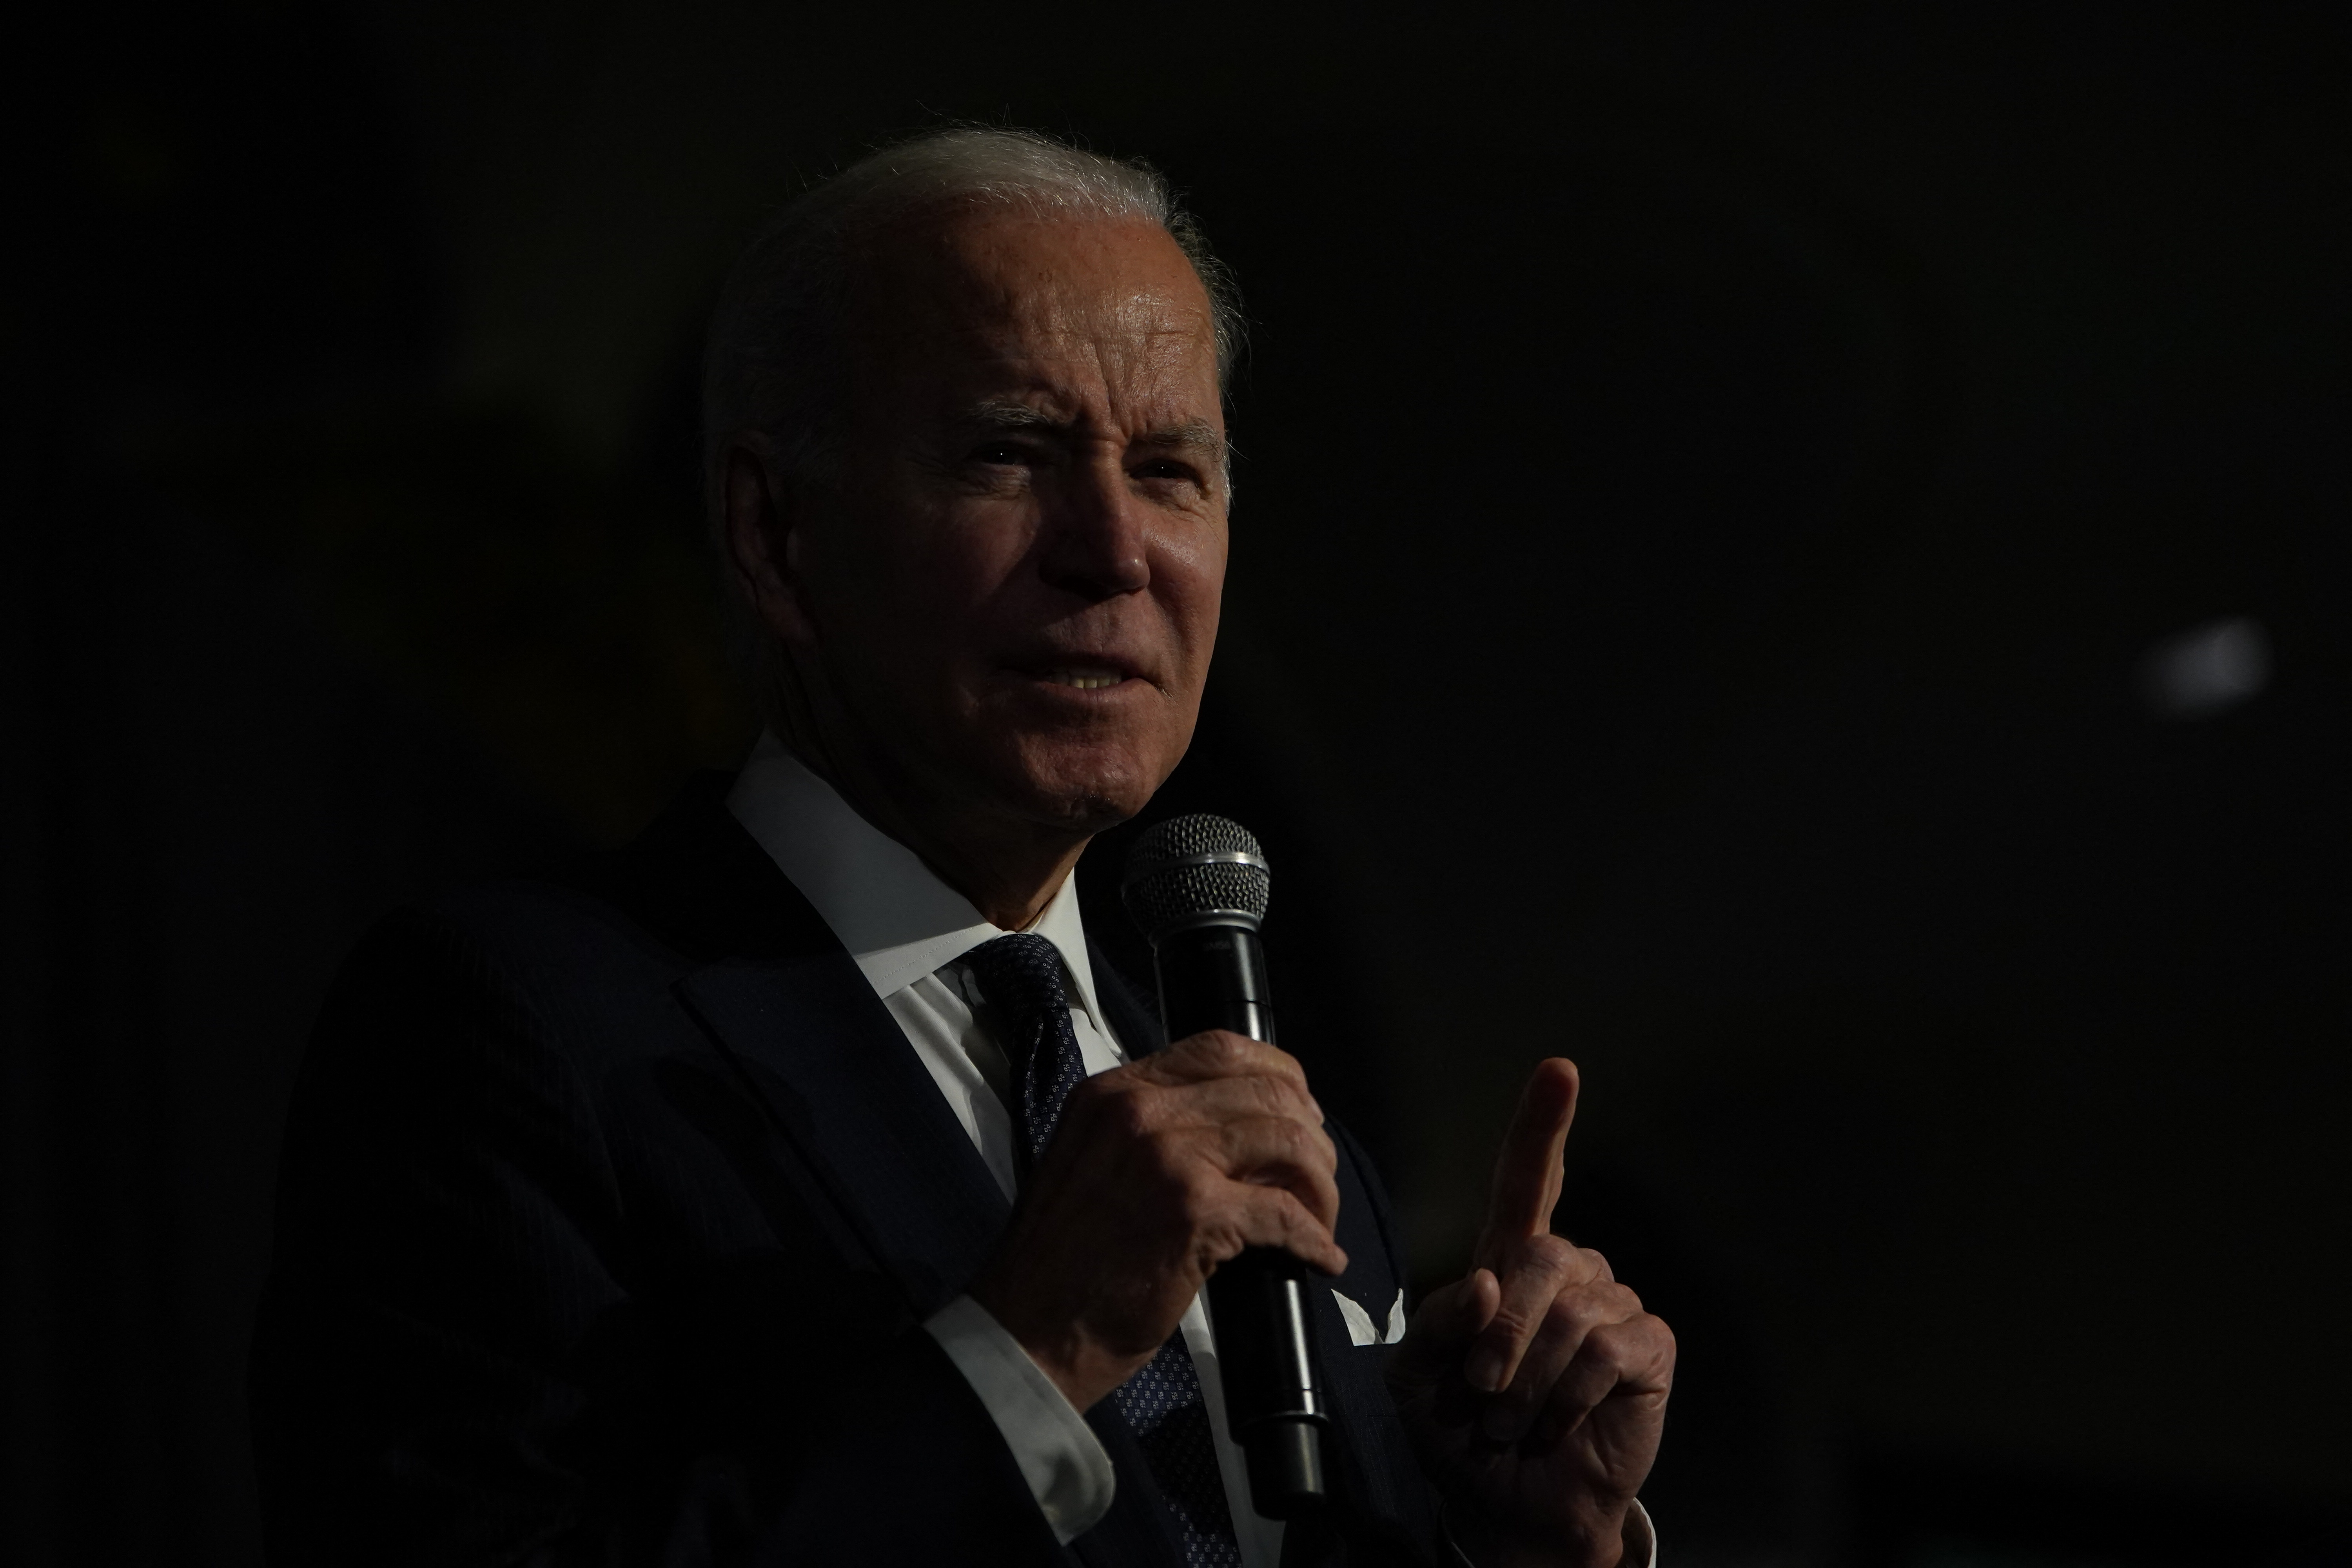 Biden speaking at an event